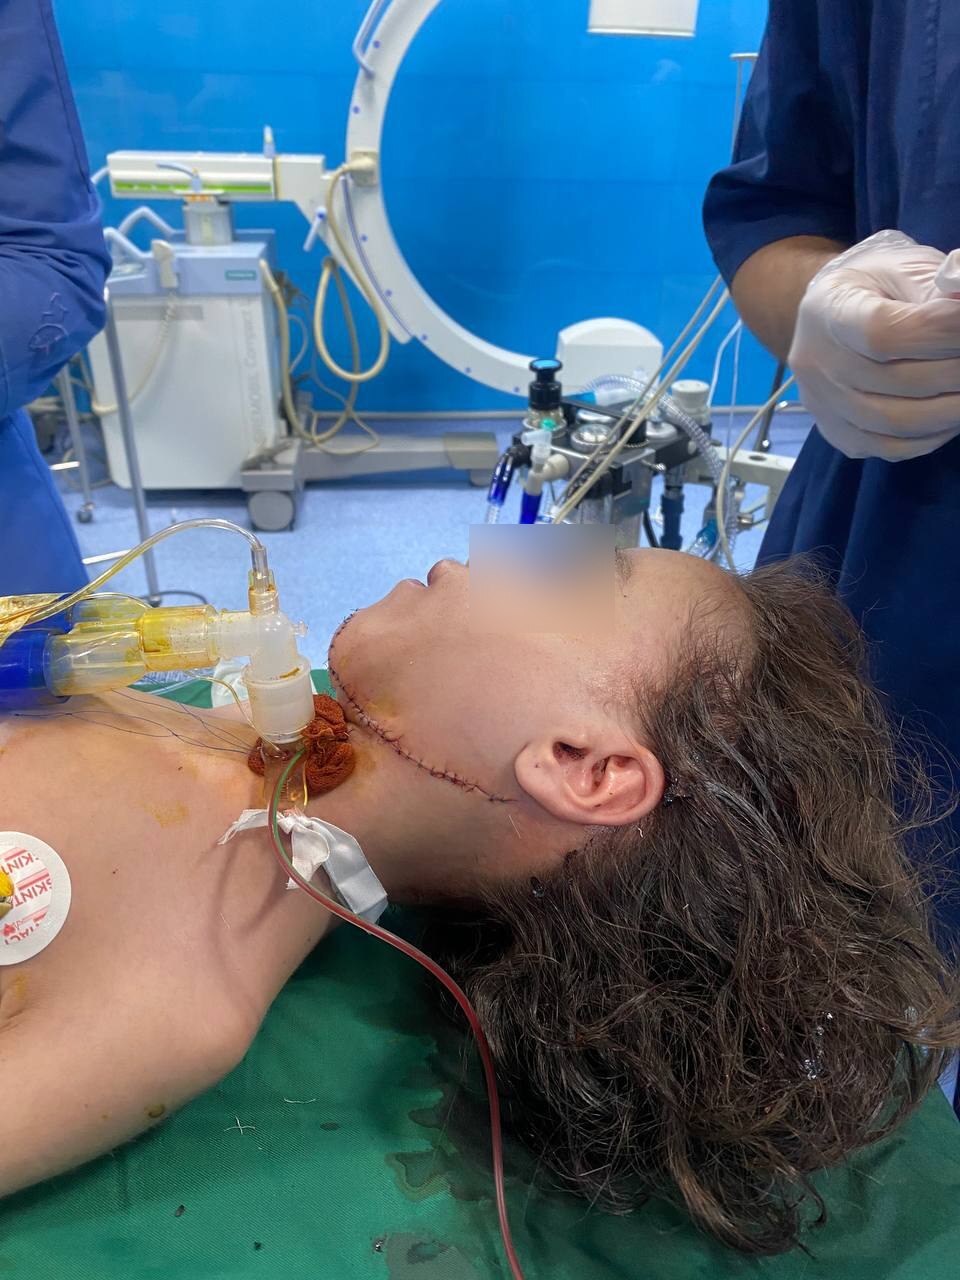 شاهکار پزشکان ایرانی در جراحی دختر 11 ساله (16+)